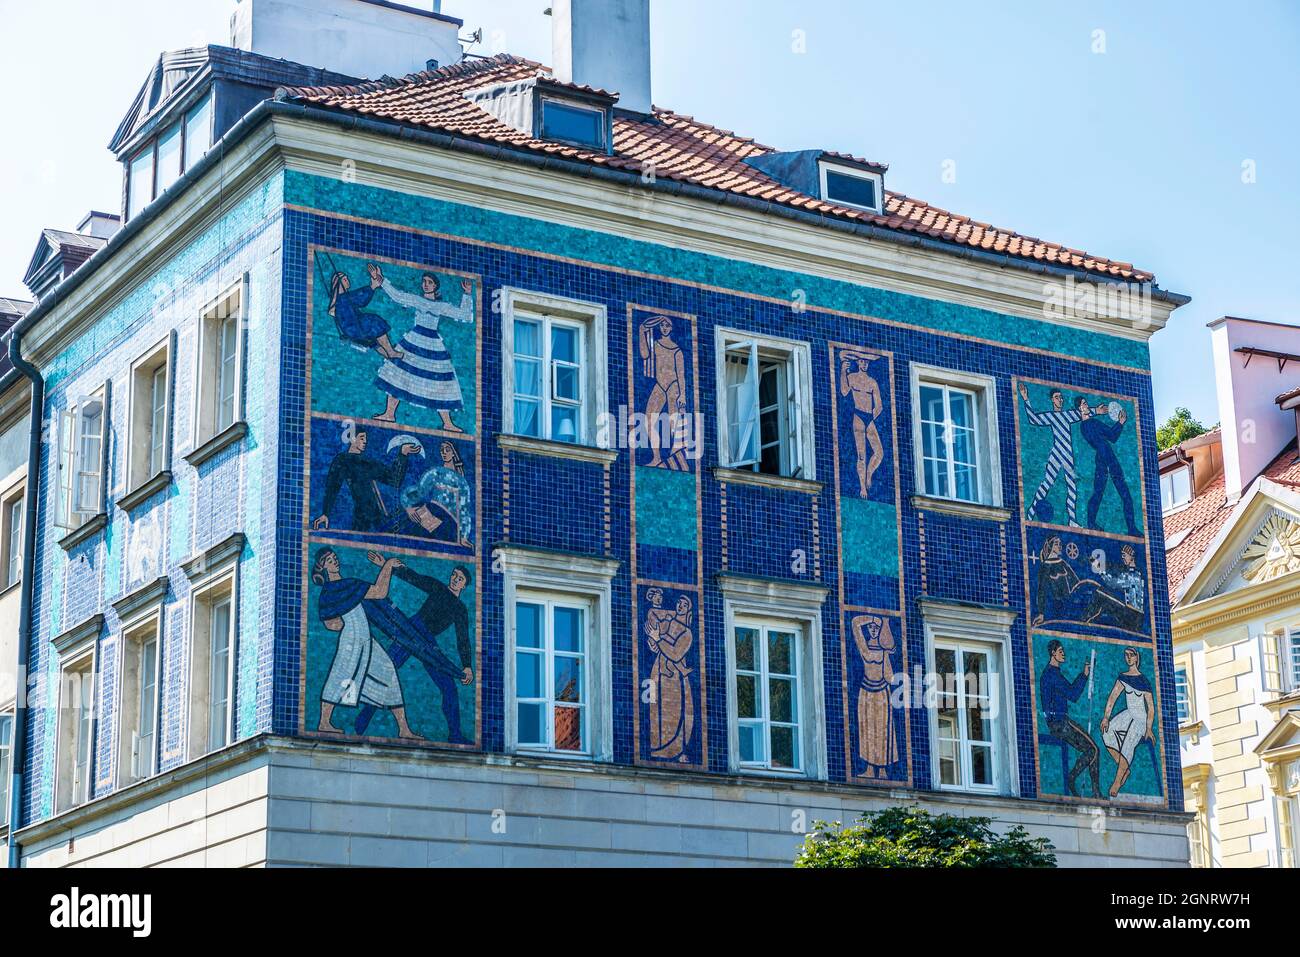 Facciata di un antico edificio classico decorato con mosaici di figure umane nella città vecchia di Varsavia, Polonia Foto Stock